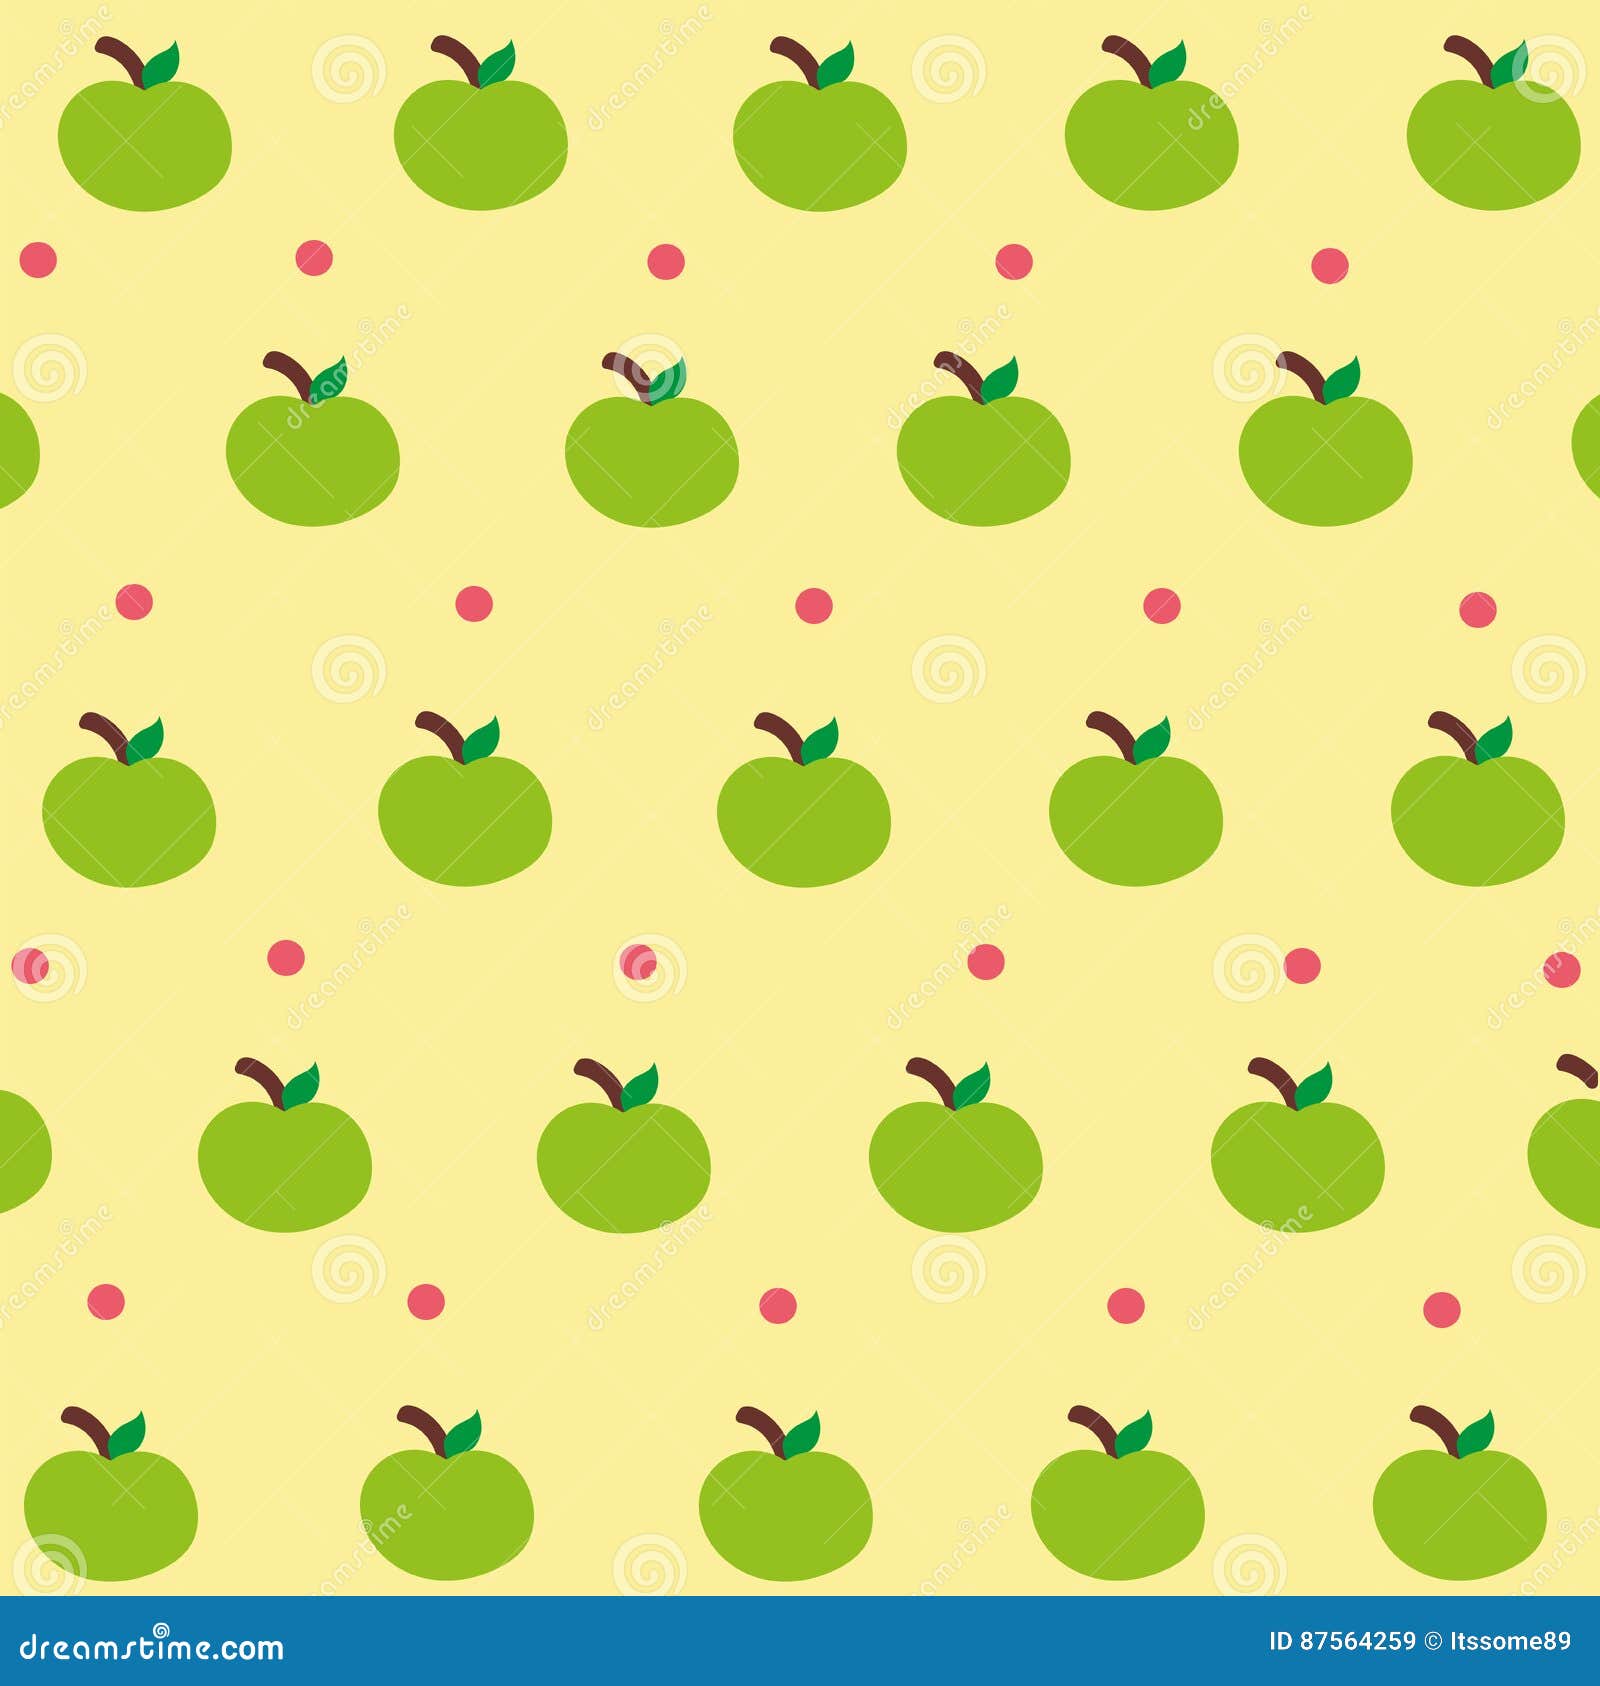 50 Cute Apple Wallpaper  WallpaperSafari